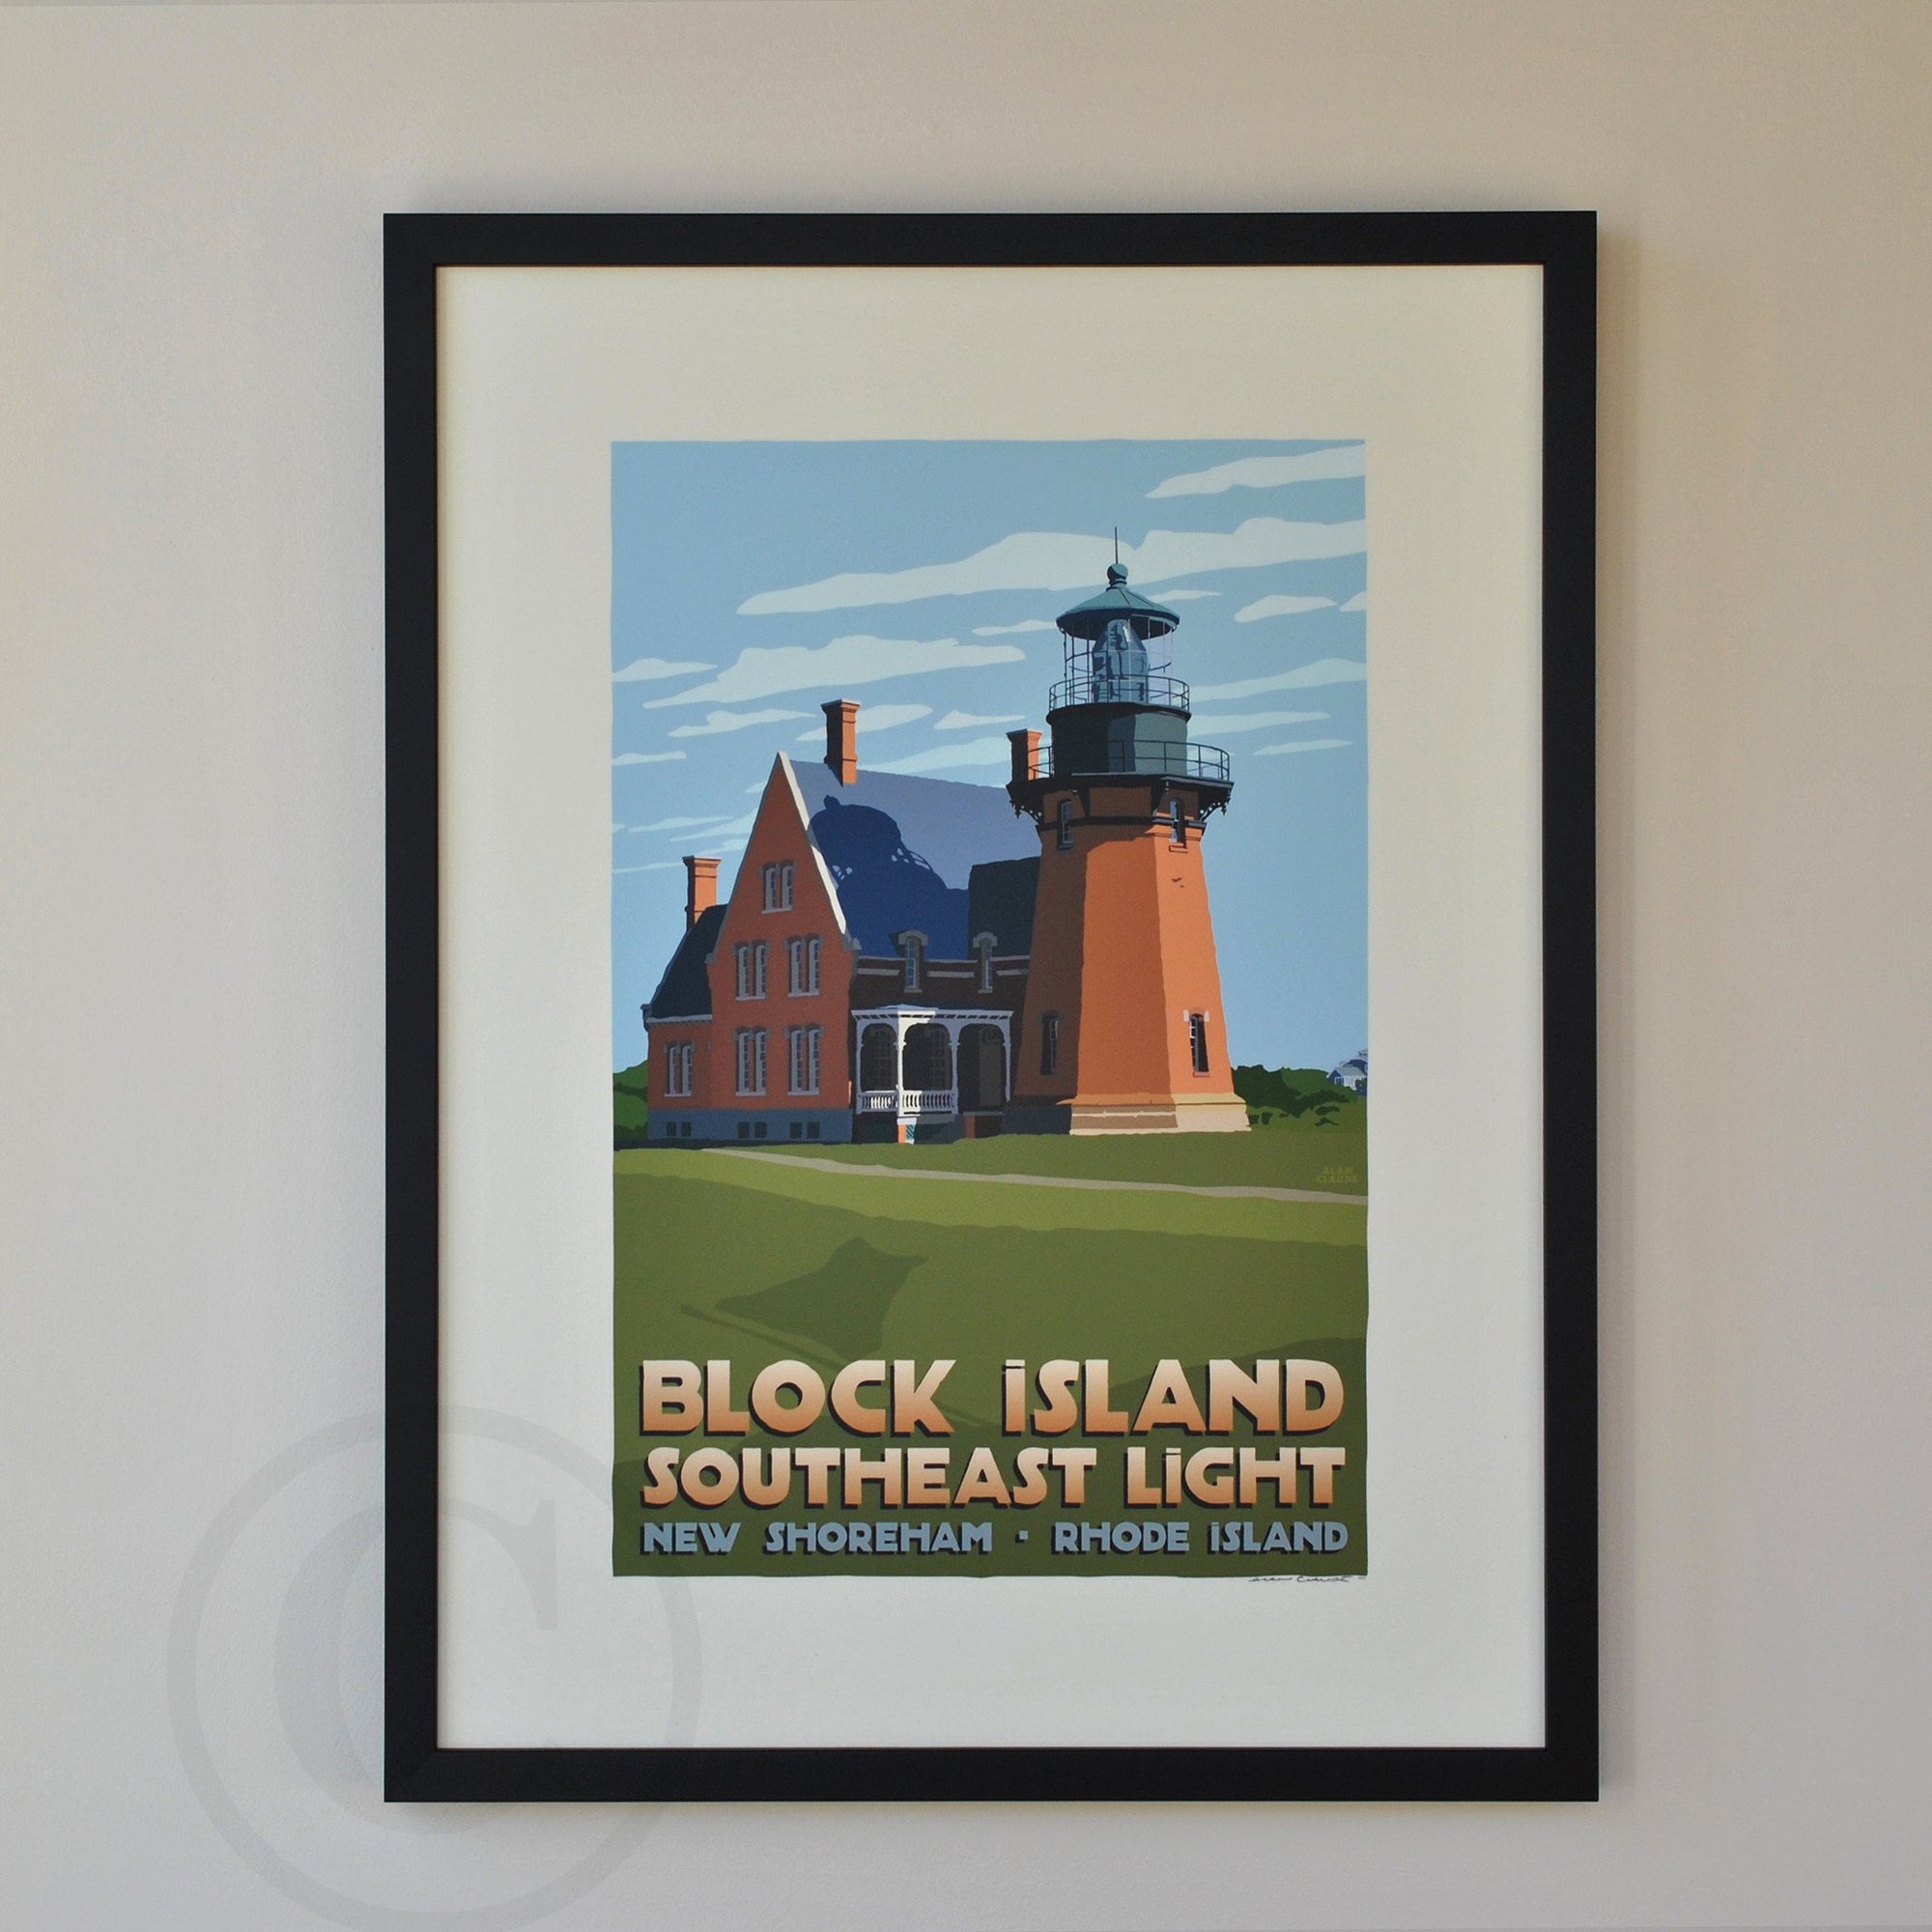 Block Island Southeast Light Art Print 18" x 24" Framed Travel Poster By Alan Claude - Rhode Island